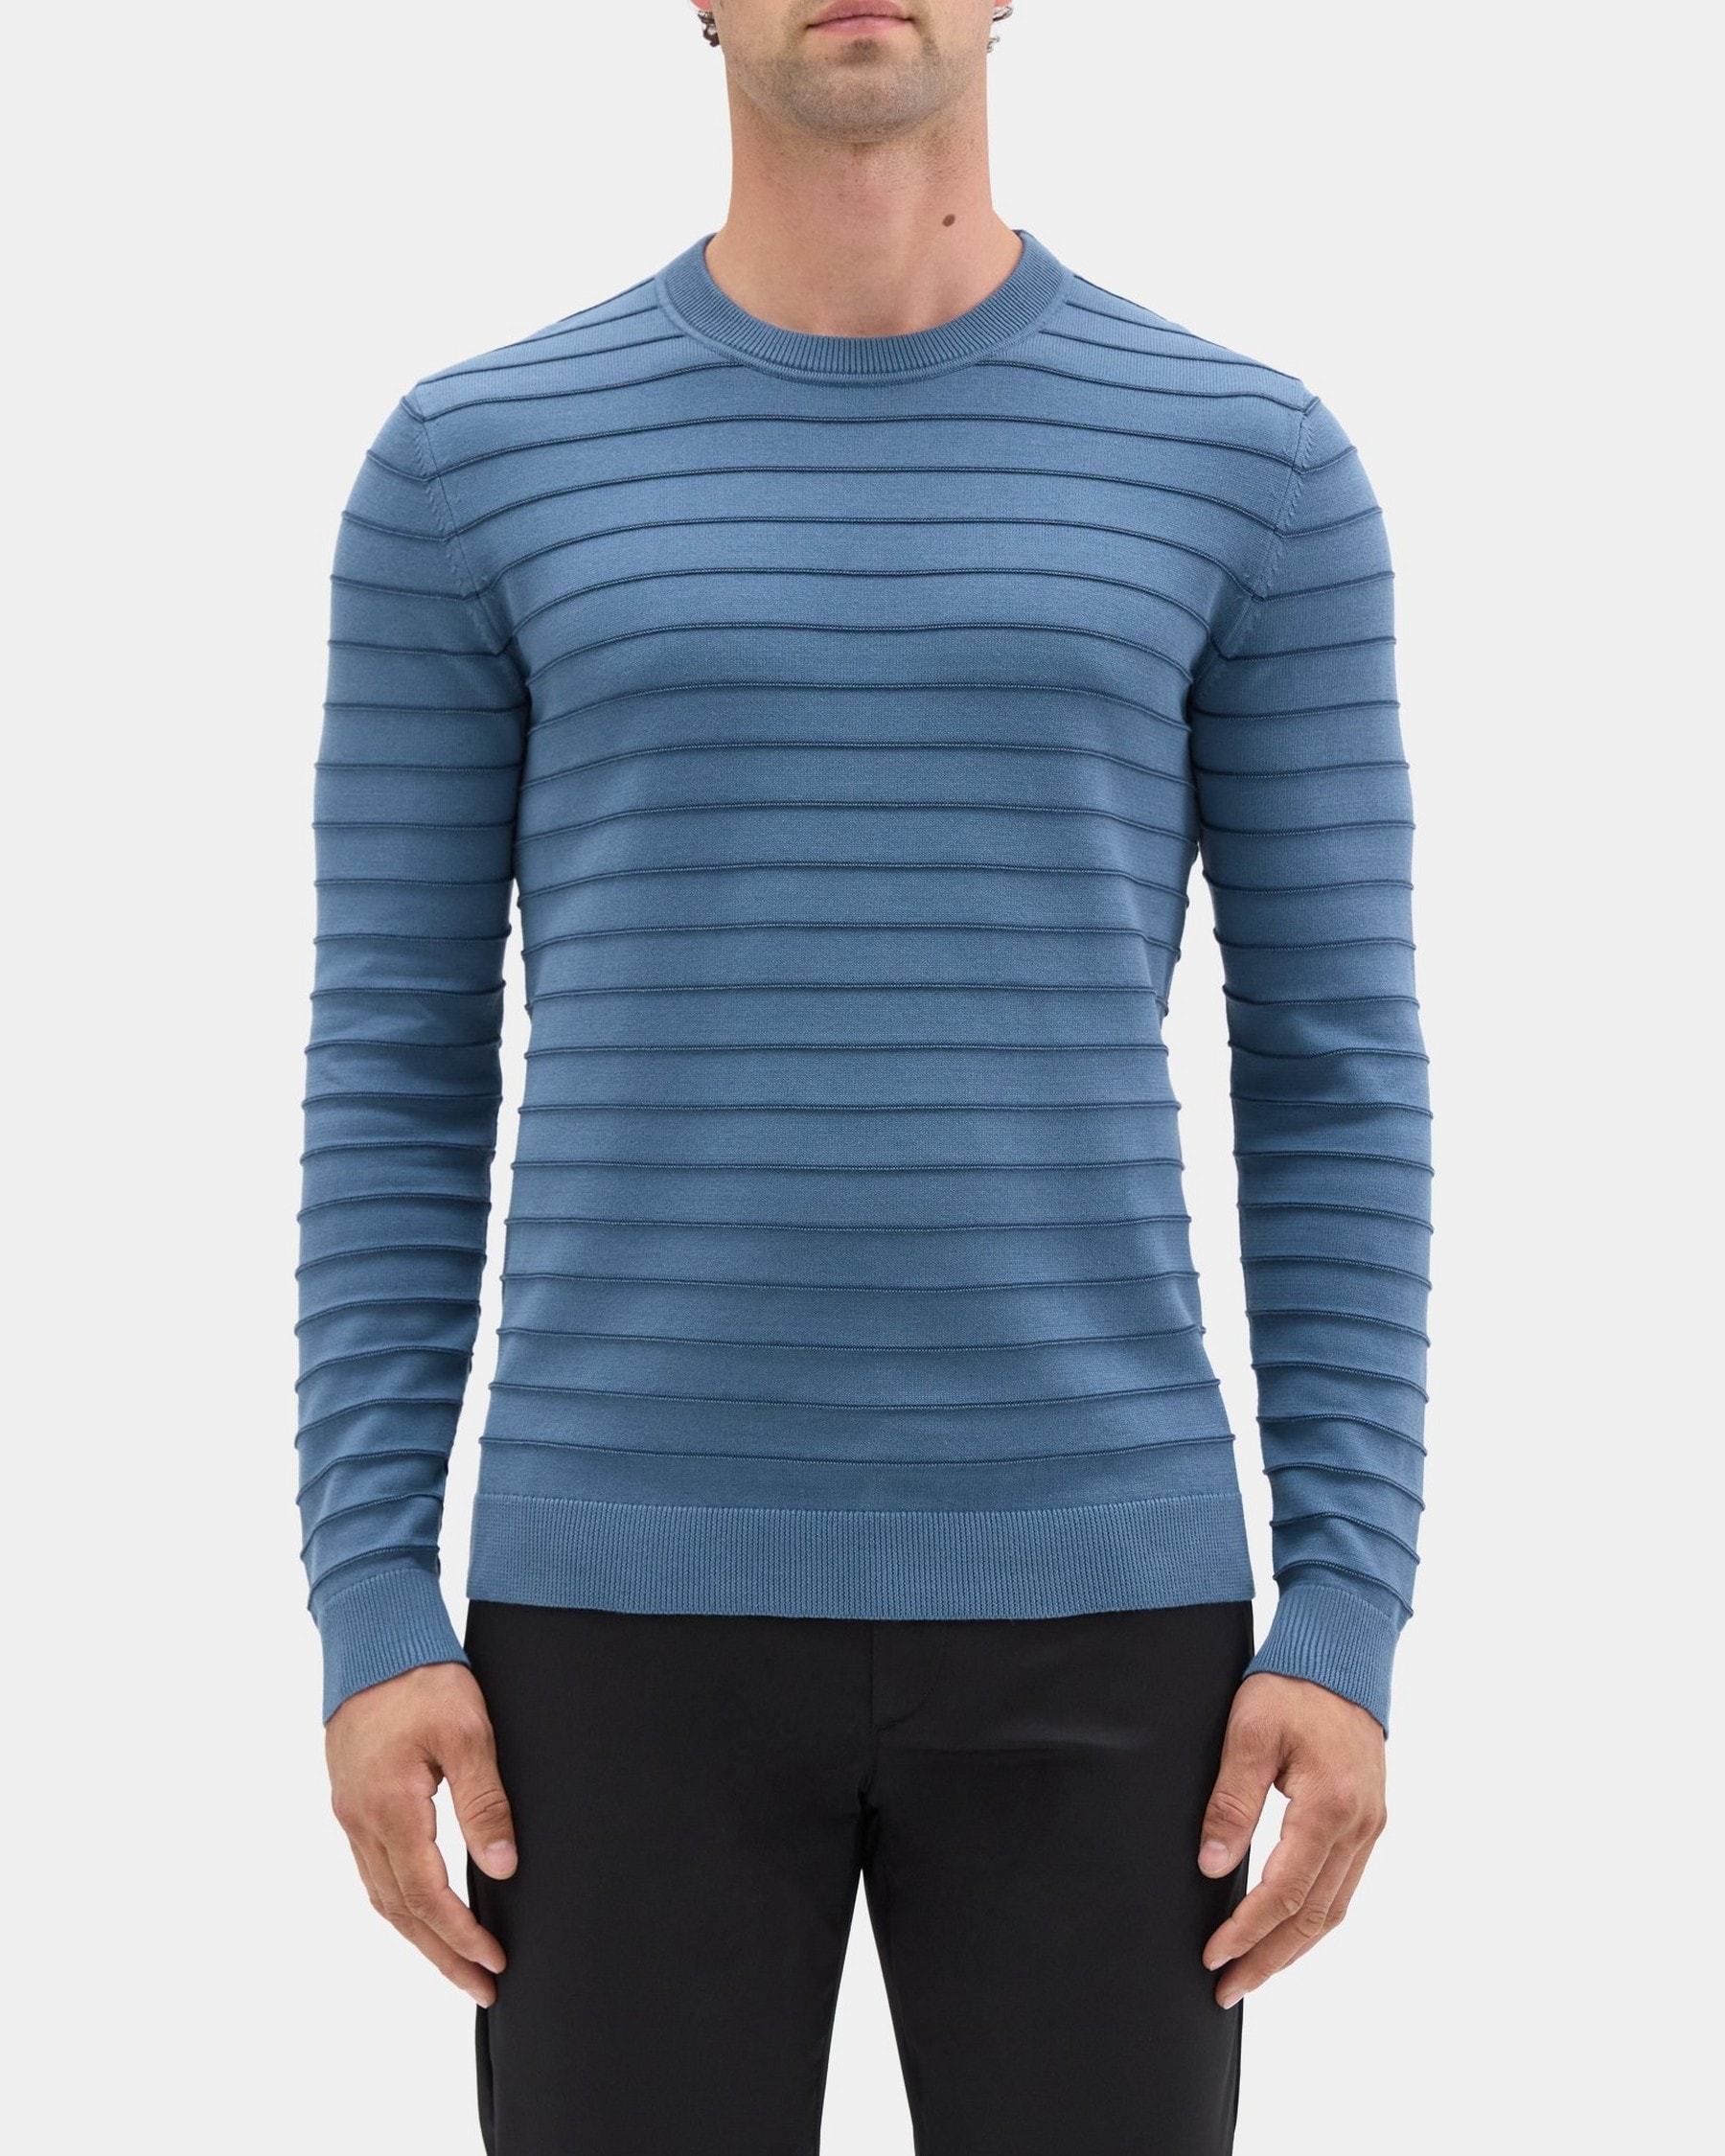 띠어리 Theory Crewneck Sweater in Striped Organic Cotton,BERING/STRATUS NAVY